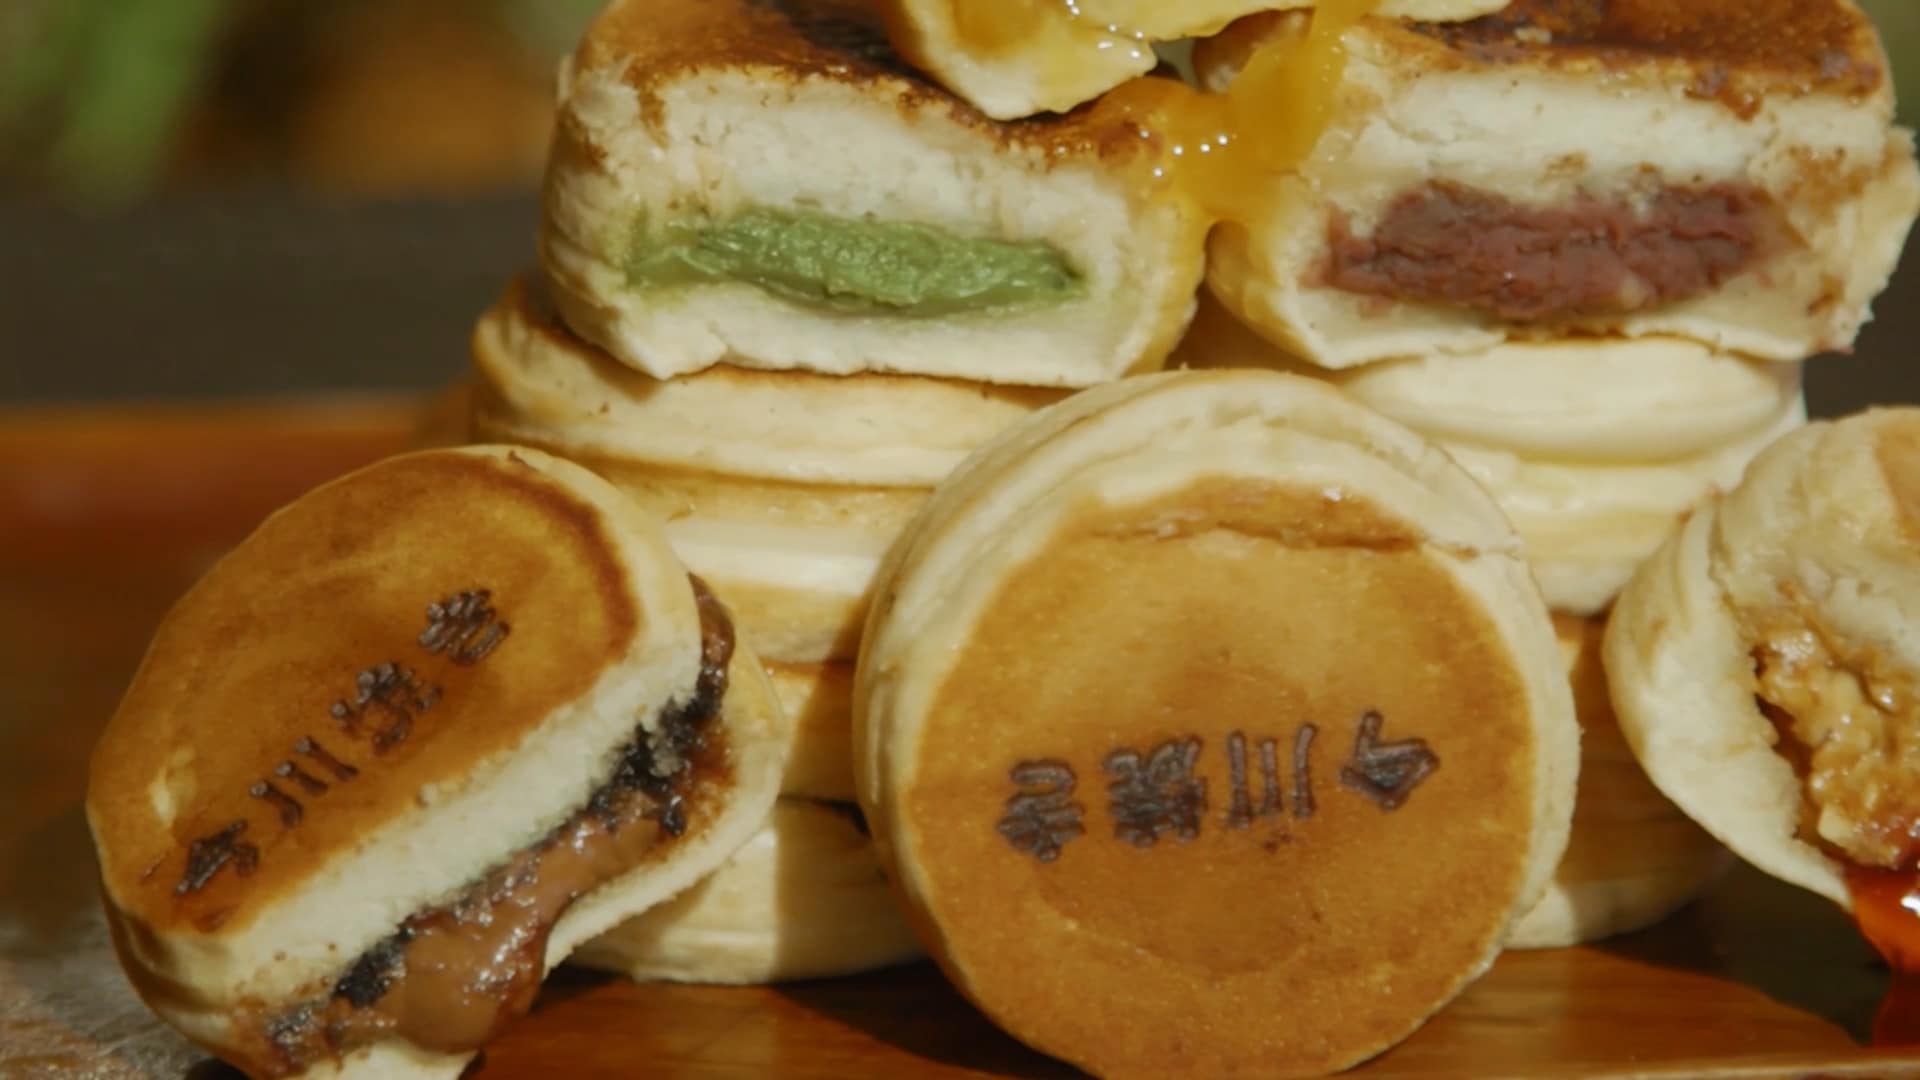 Japanese Cake Business Earns P180k A Month, Entrepreneurs Share Franchising Tips